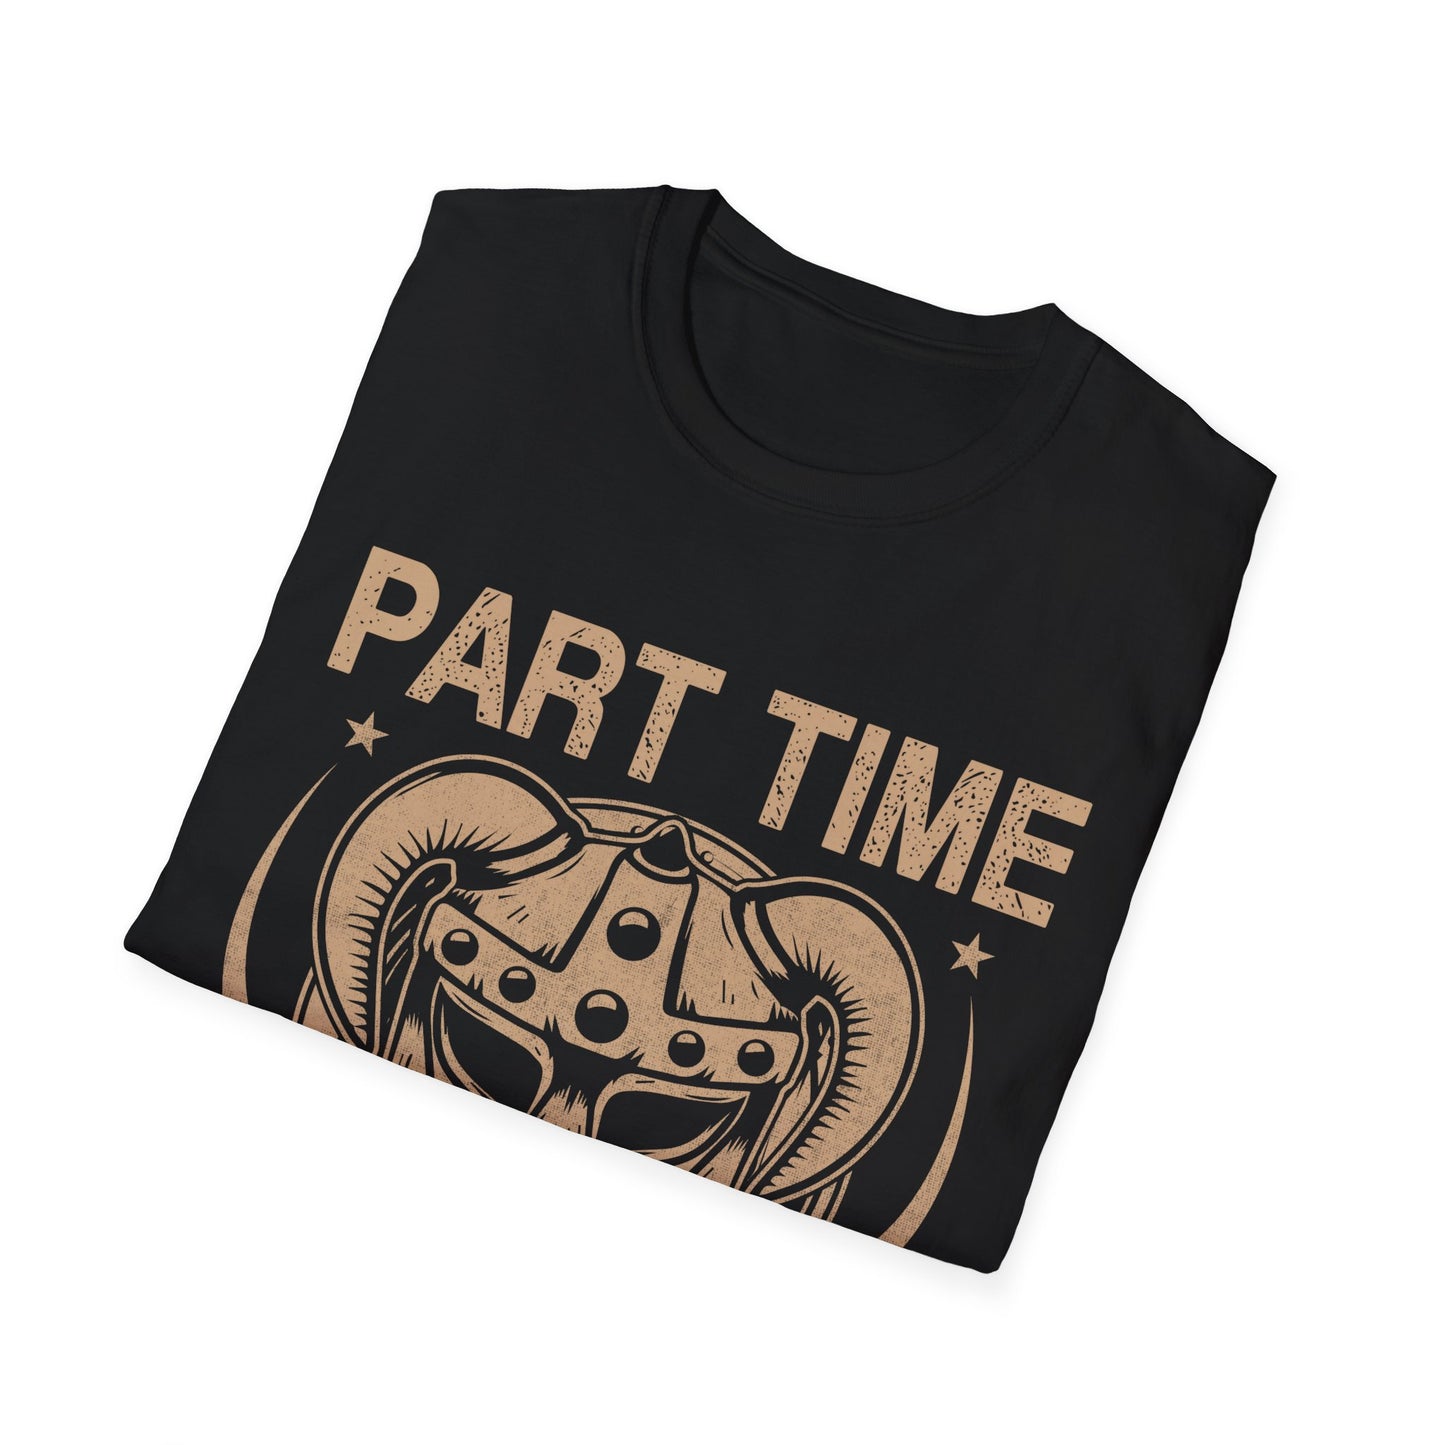 Part Time Viking T-Shirt